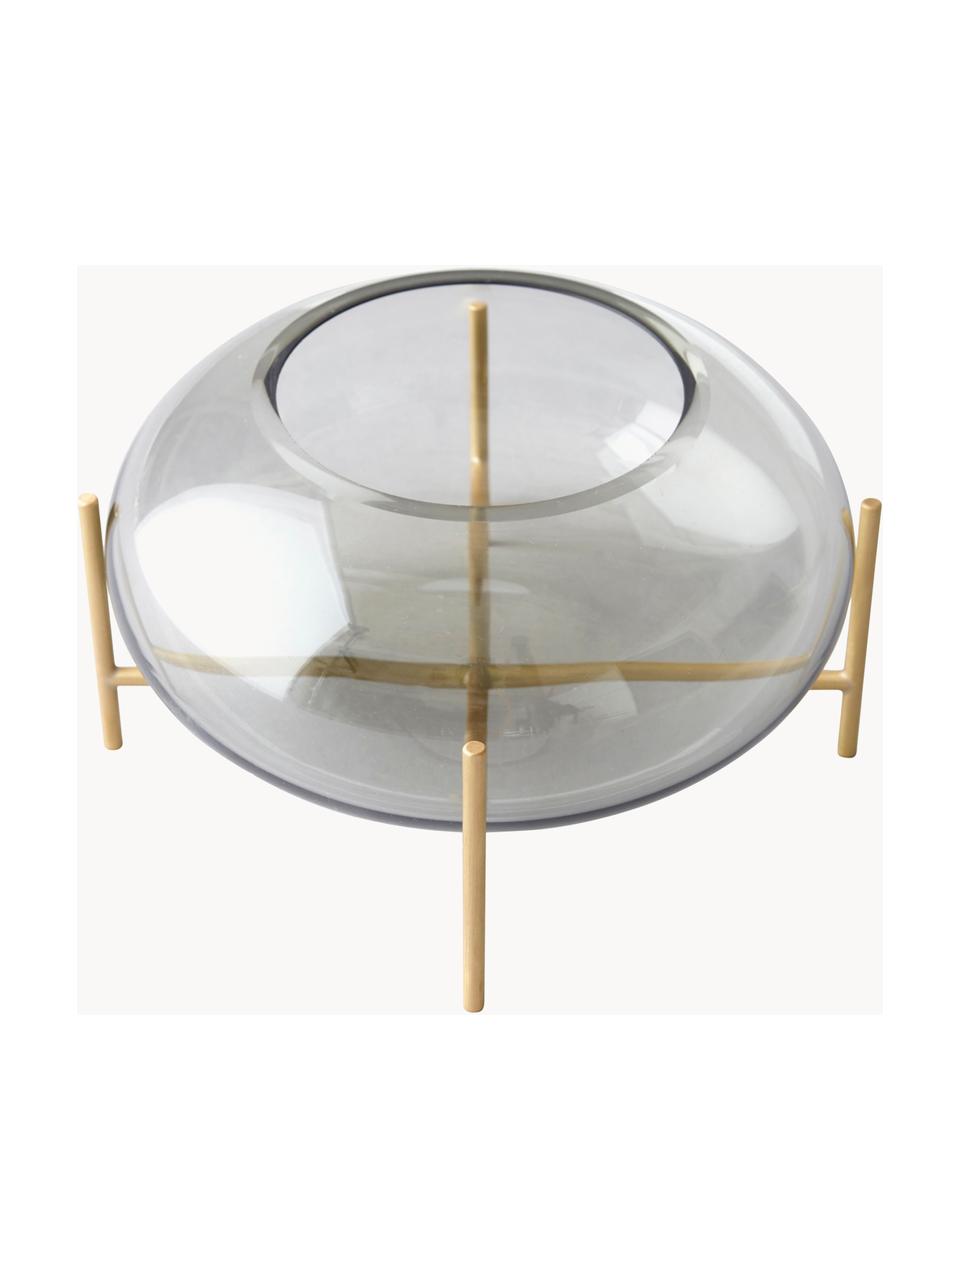 Teelichthalter Hurricane aus Glas, Messing, gebürstet
Glas, Hellgrau, transparent, Goldfarben, Ø 14 x H 9 cm